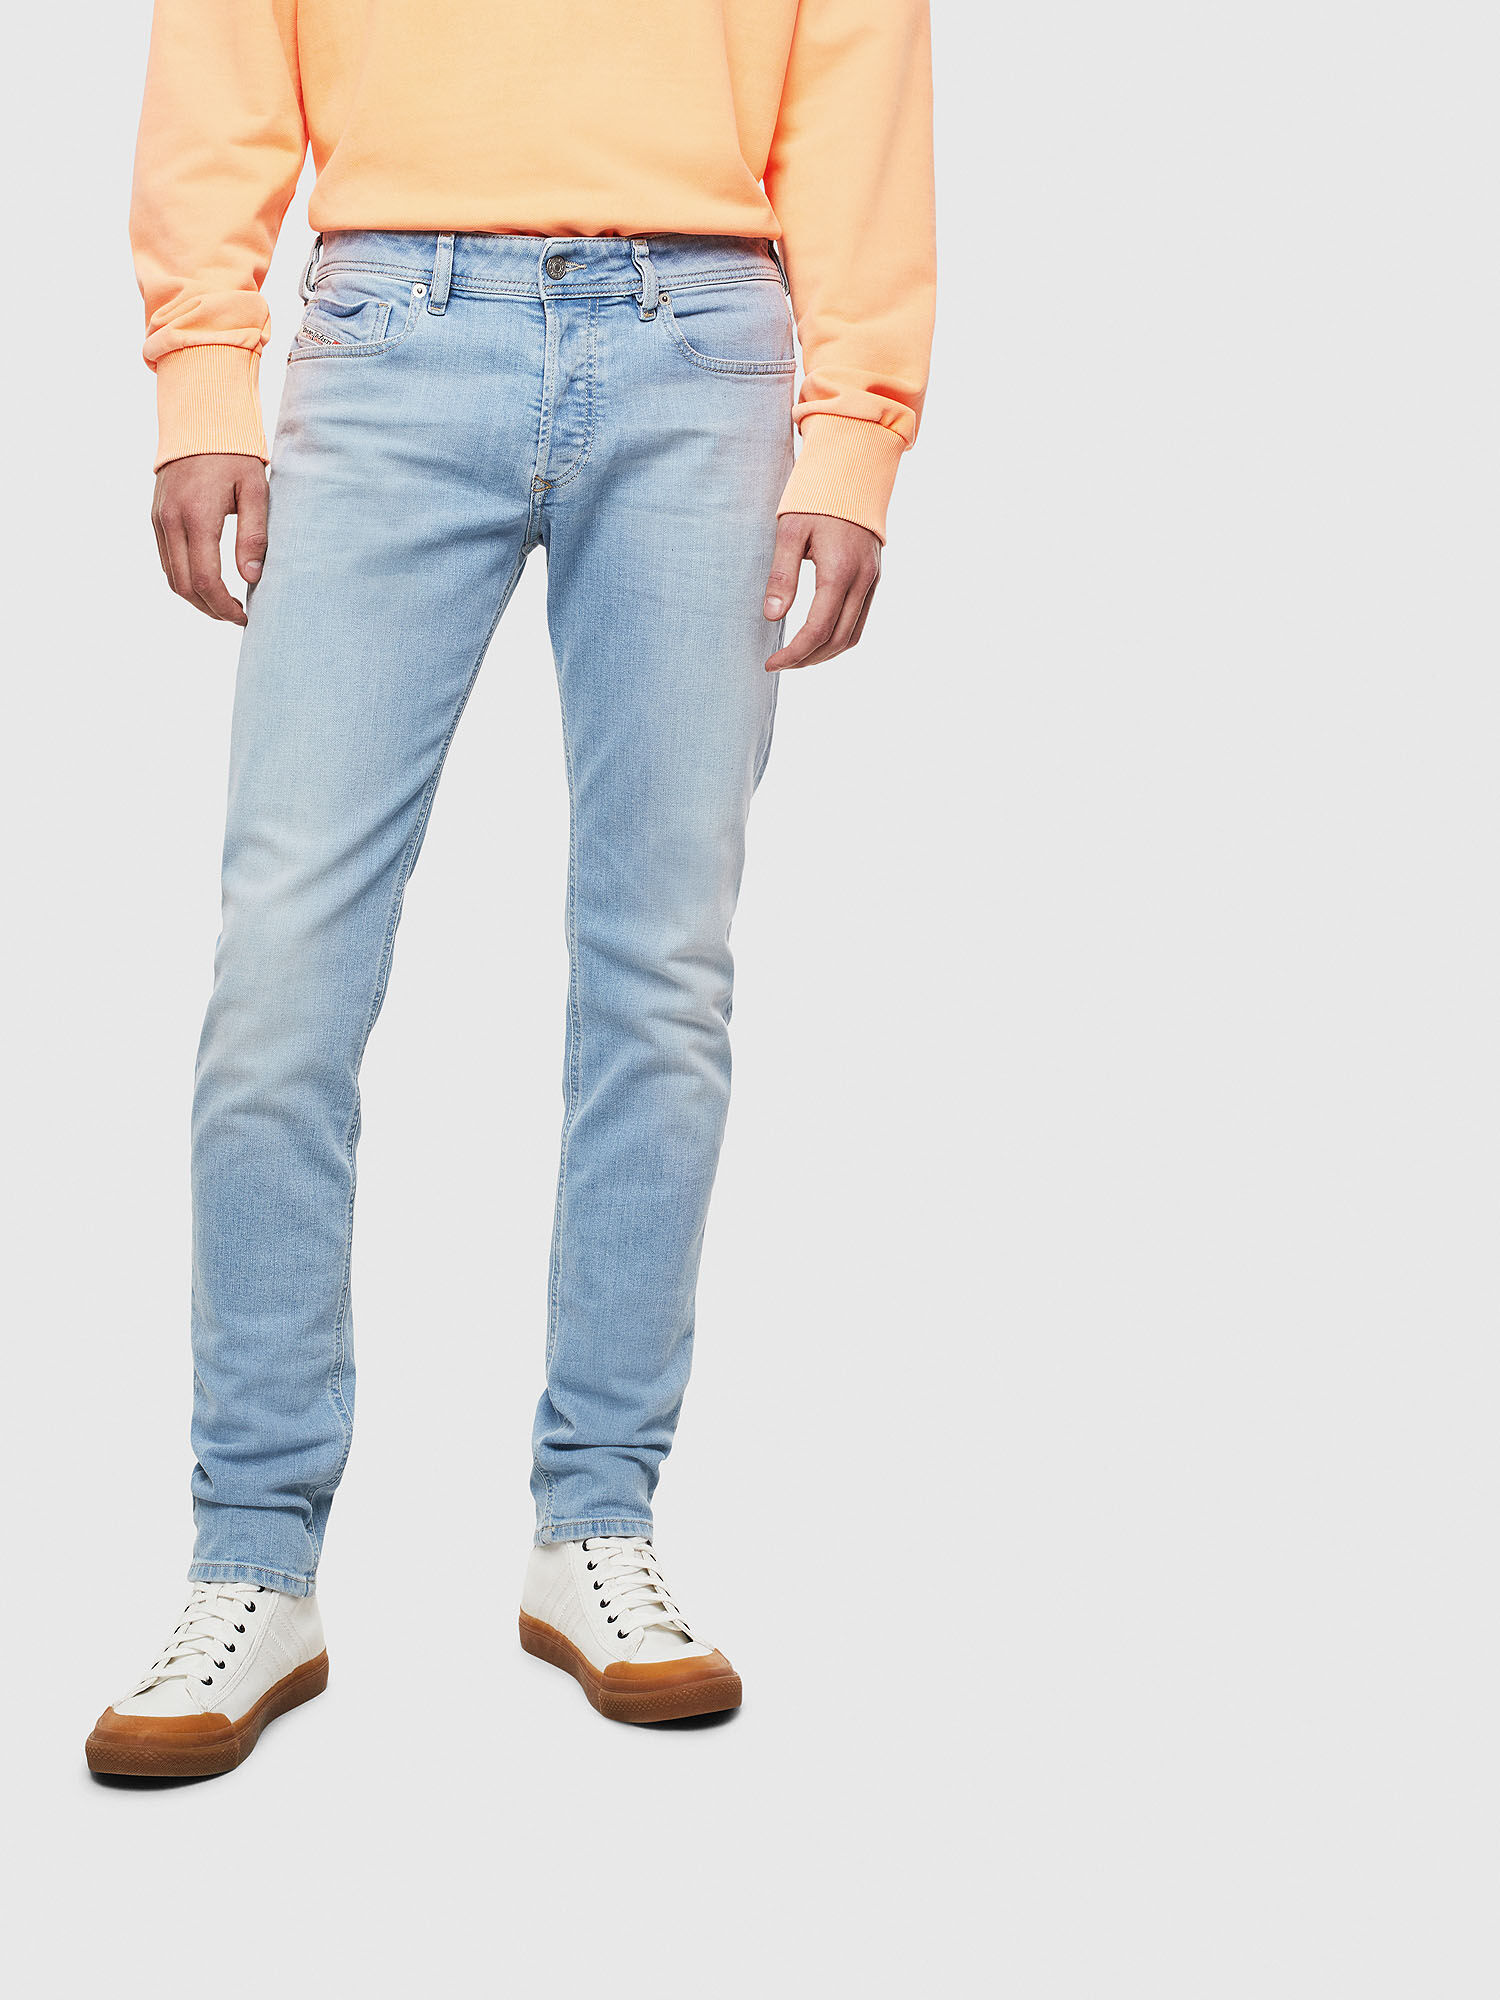 Actie gaan beslissen erosie Sleenker 009BJ Man: Skinny Light blue Jeans | Diesel